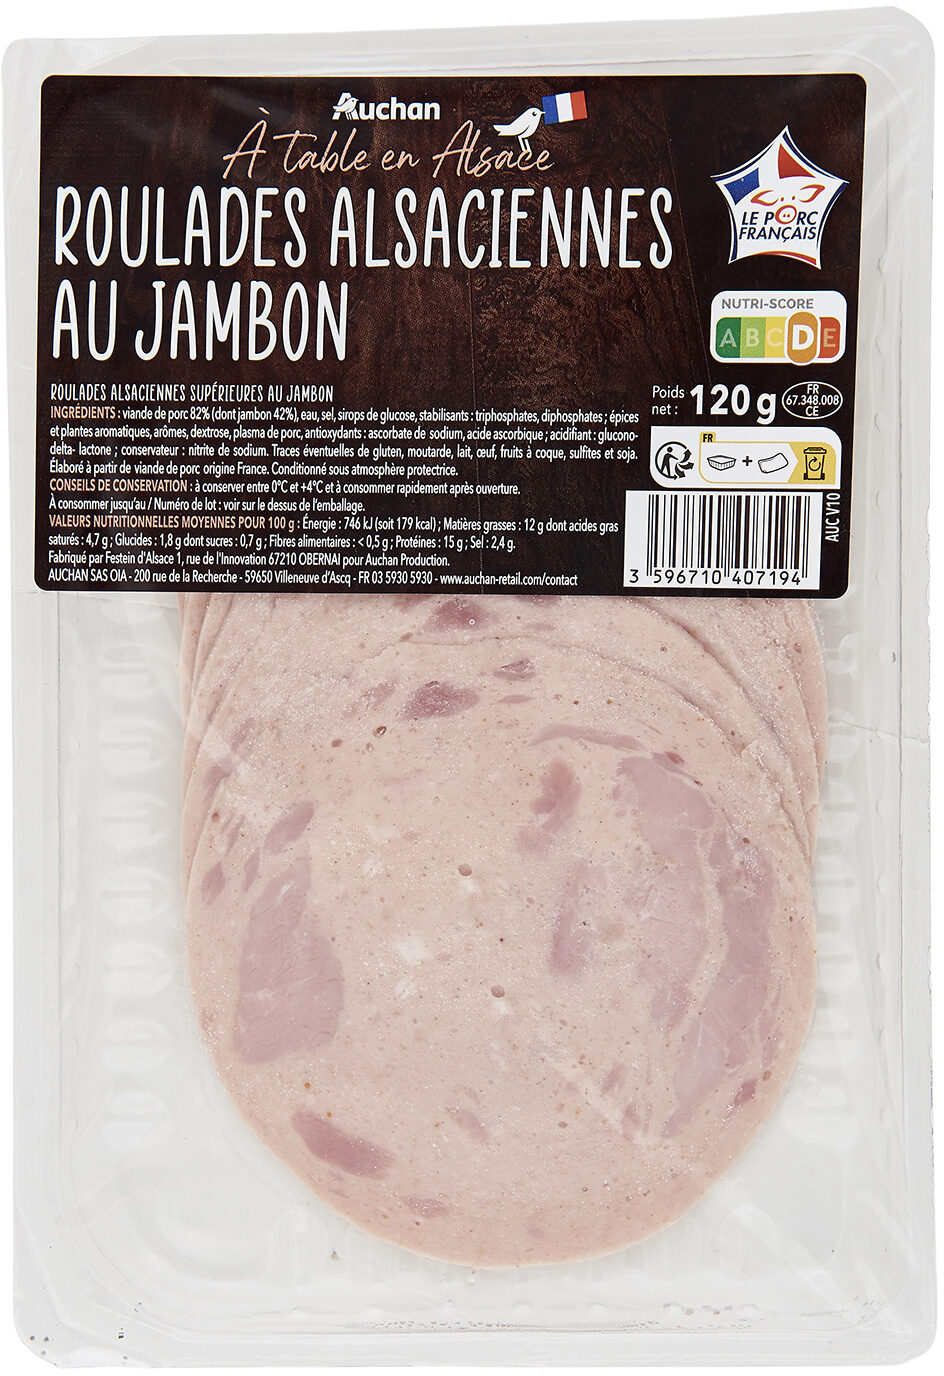 Roulades Alsaciennes au jambon - Product - fr